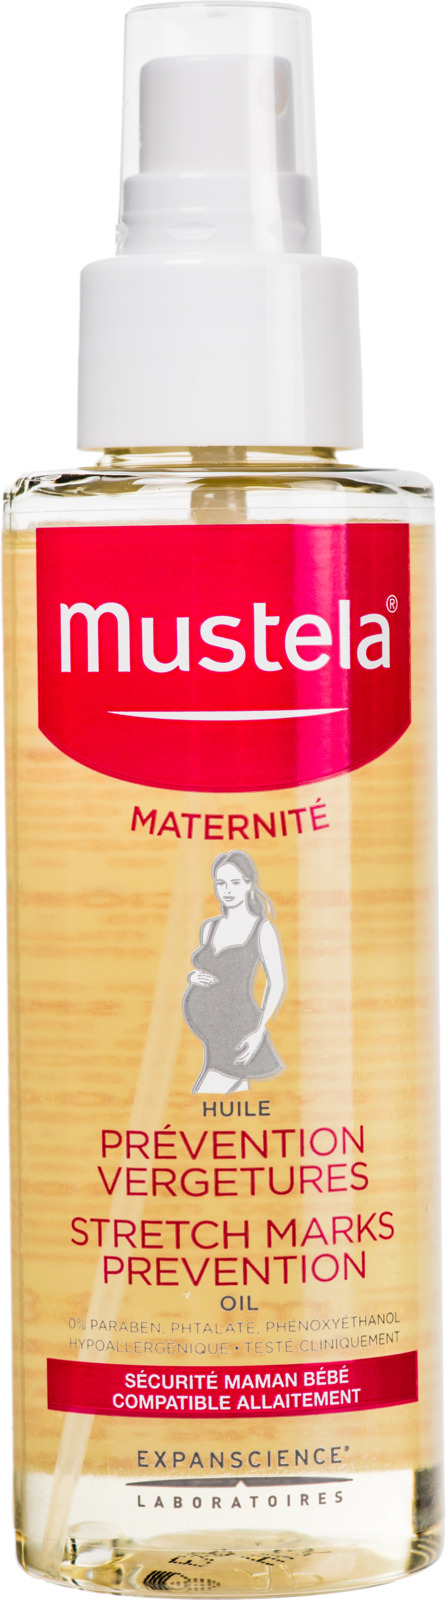 купить Mustela Maternity Масло для профилактики растяжек 105 мл - заказ и доставка в Москве и Санкт-Петербурге